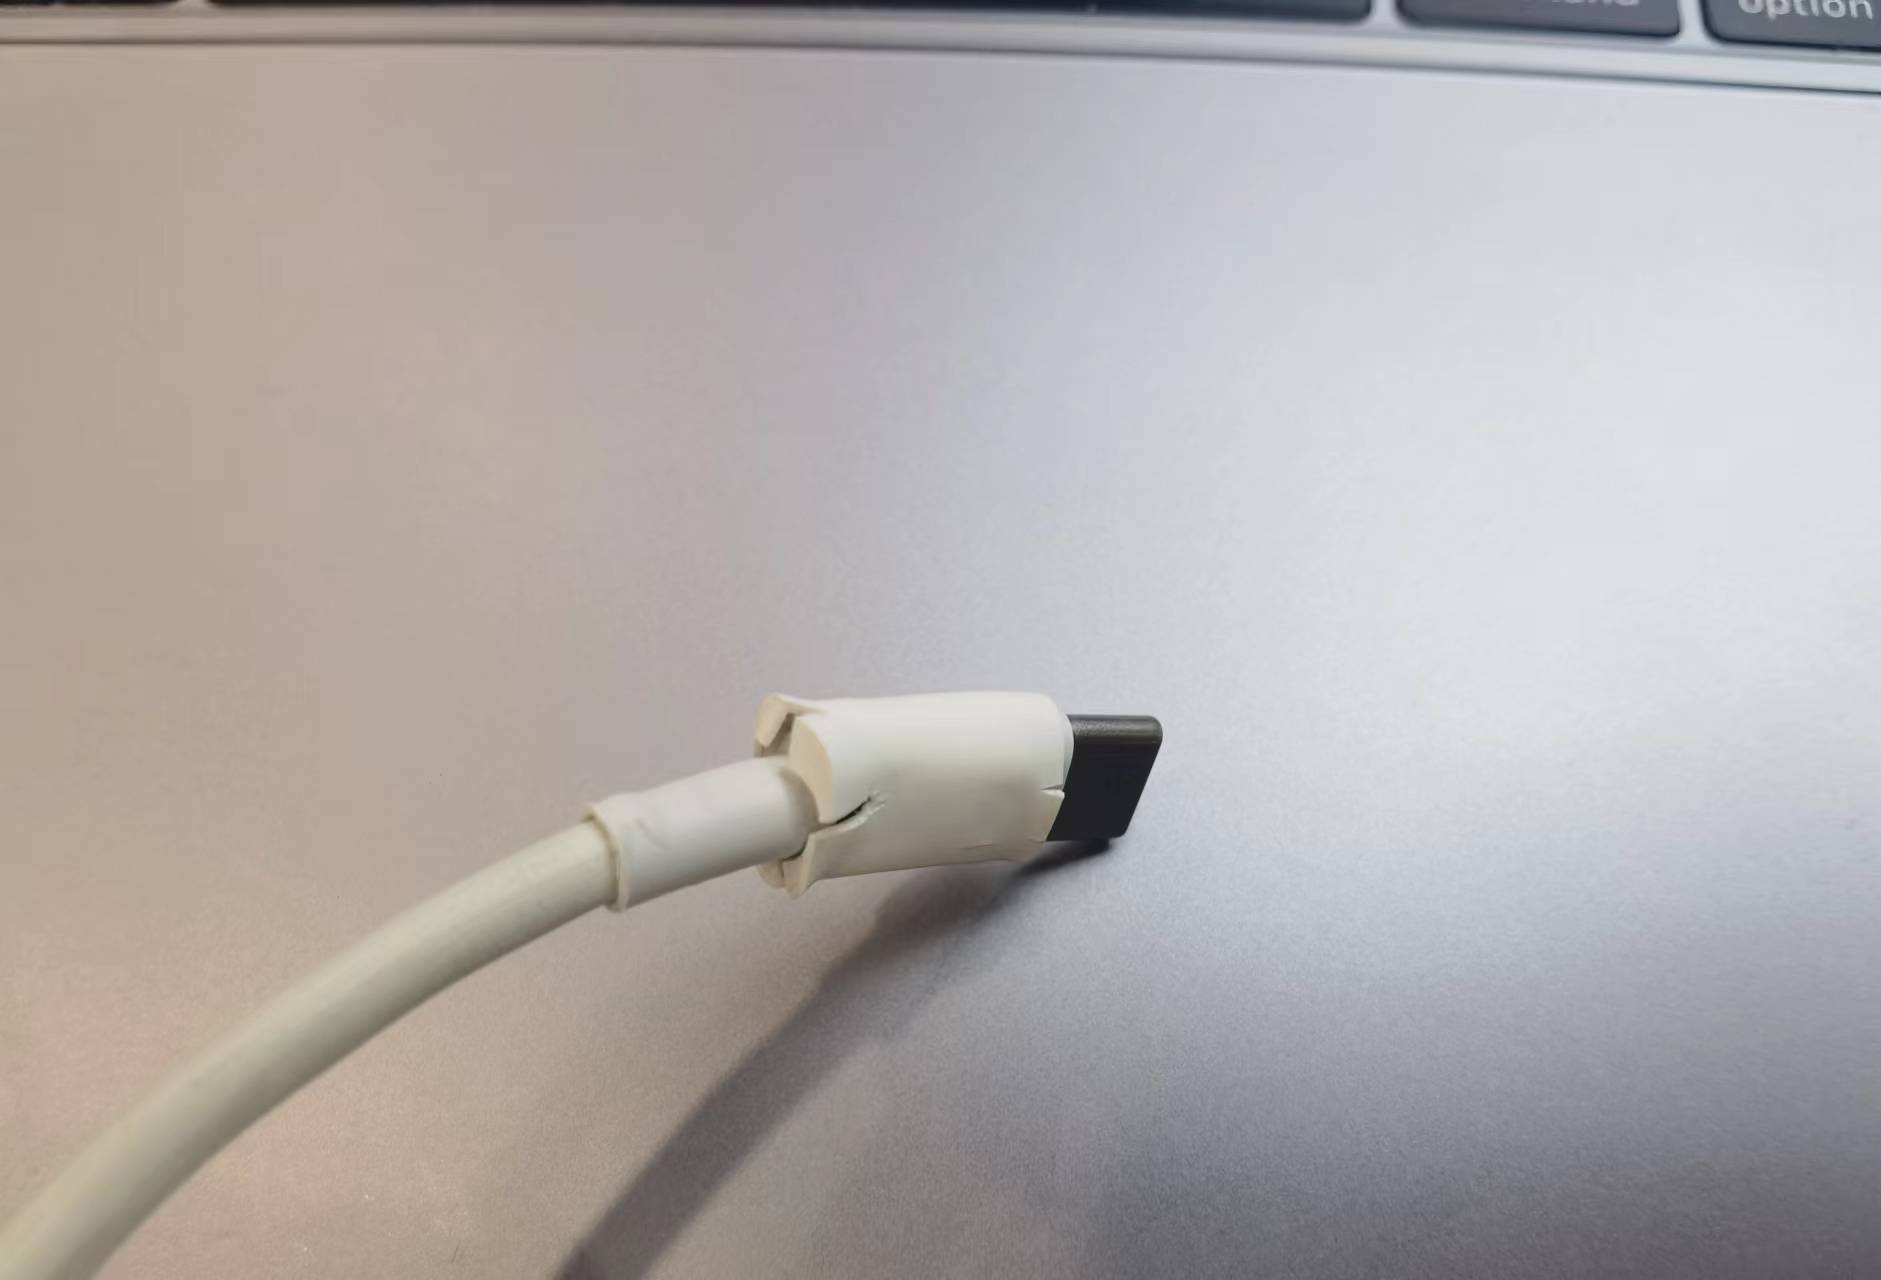 破损的苹果电脑数据线头